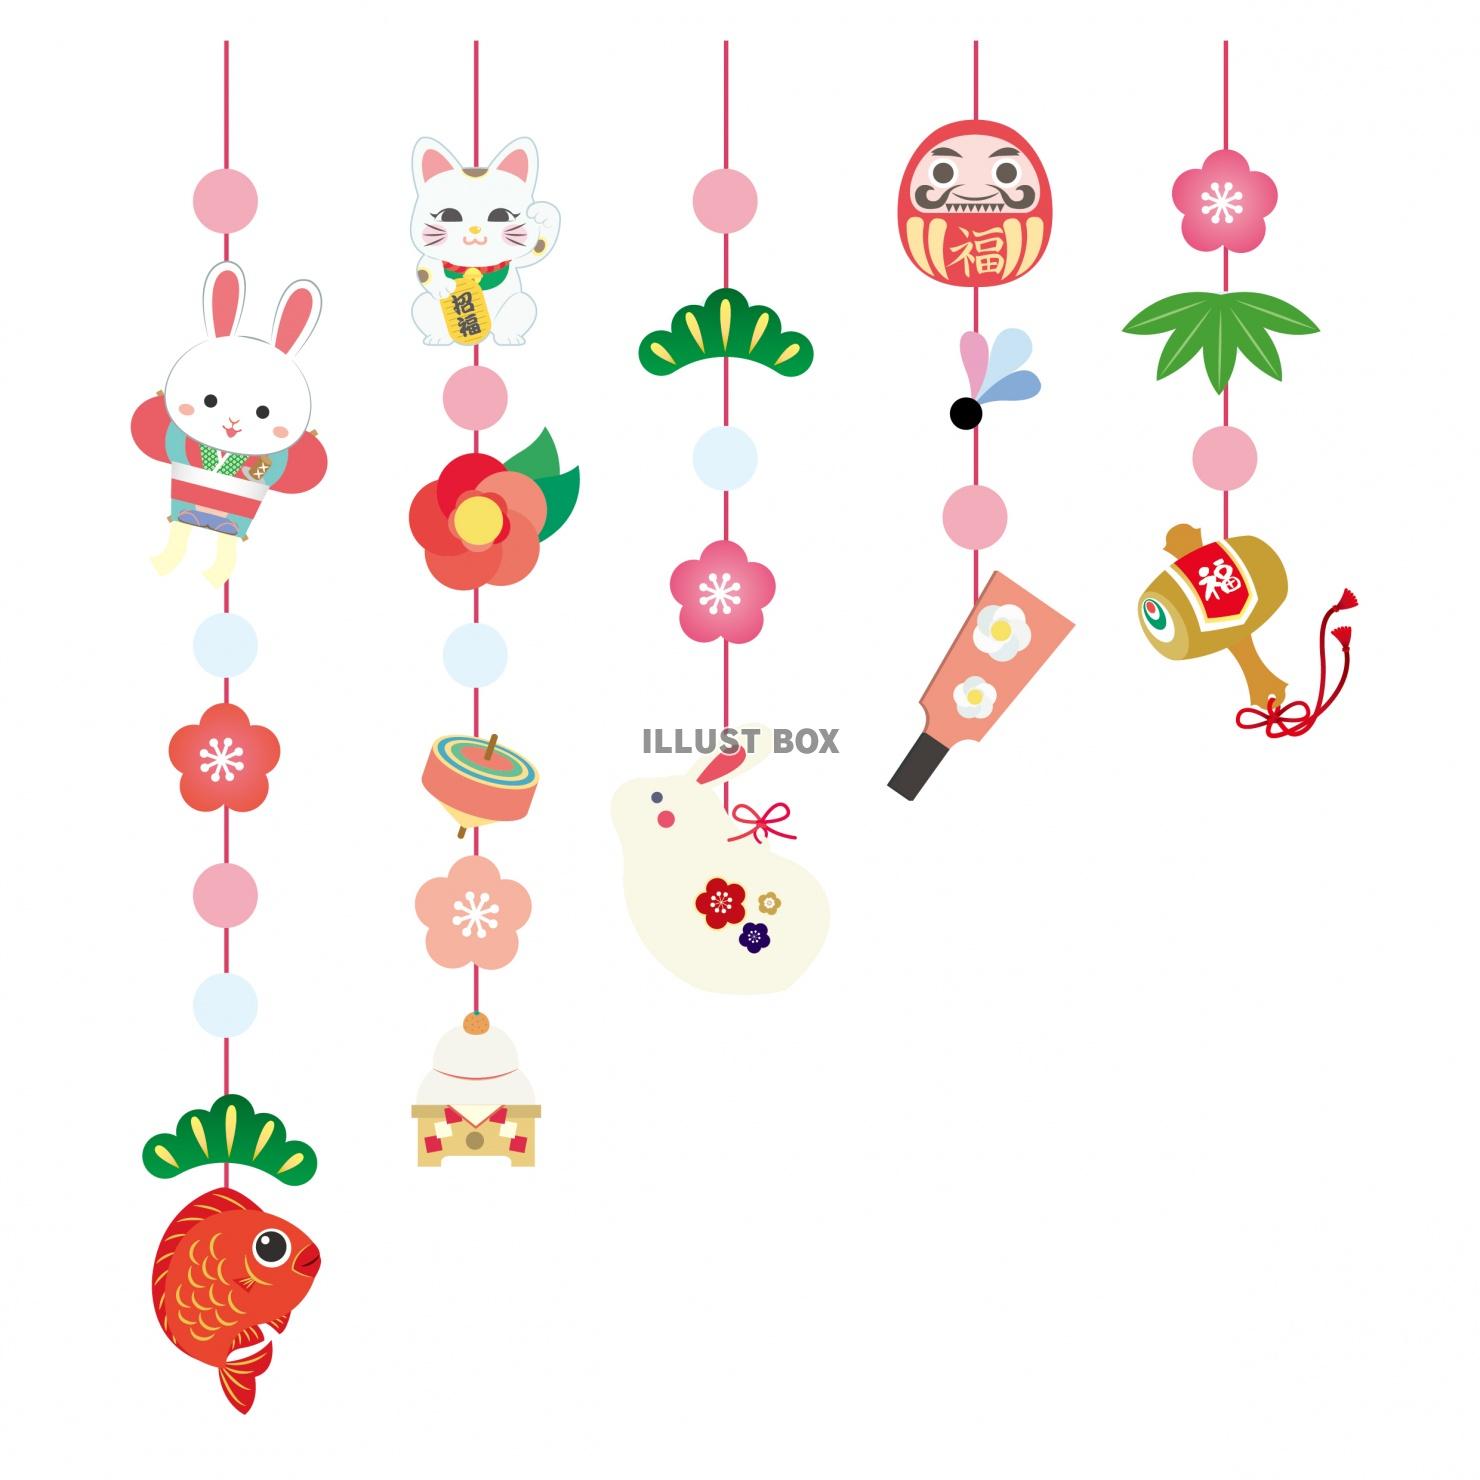 無料イラスト 年賀状に使える 卯年のお正月 吊るし飾りのイラスト